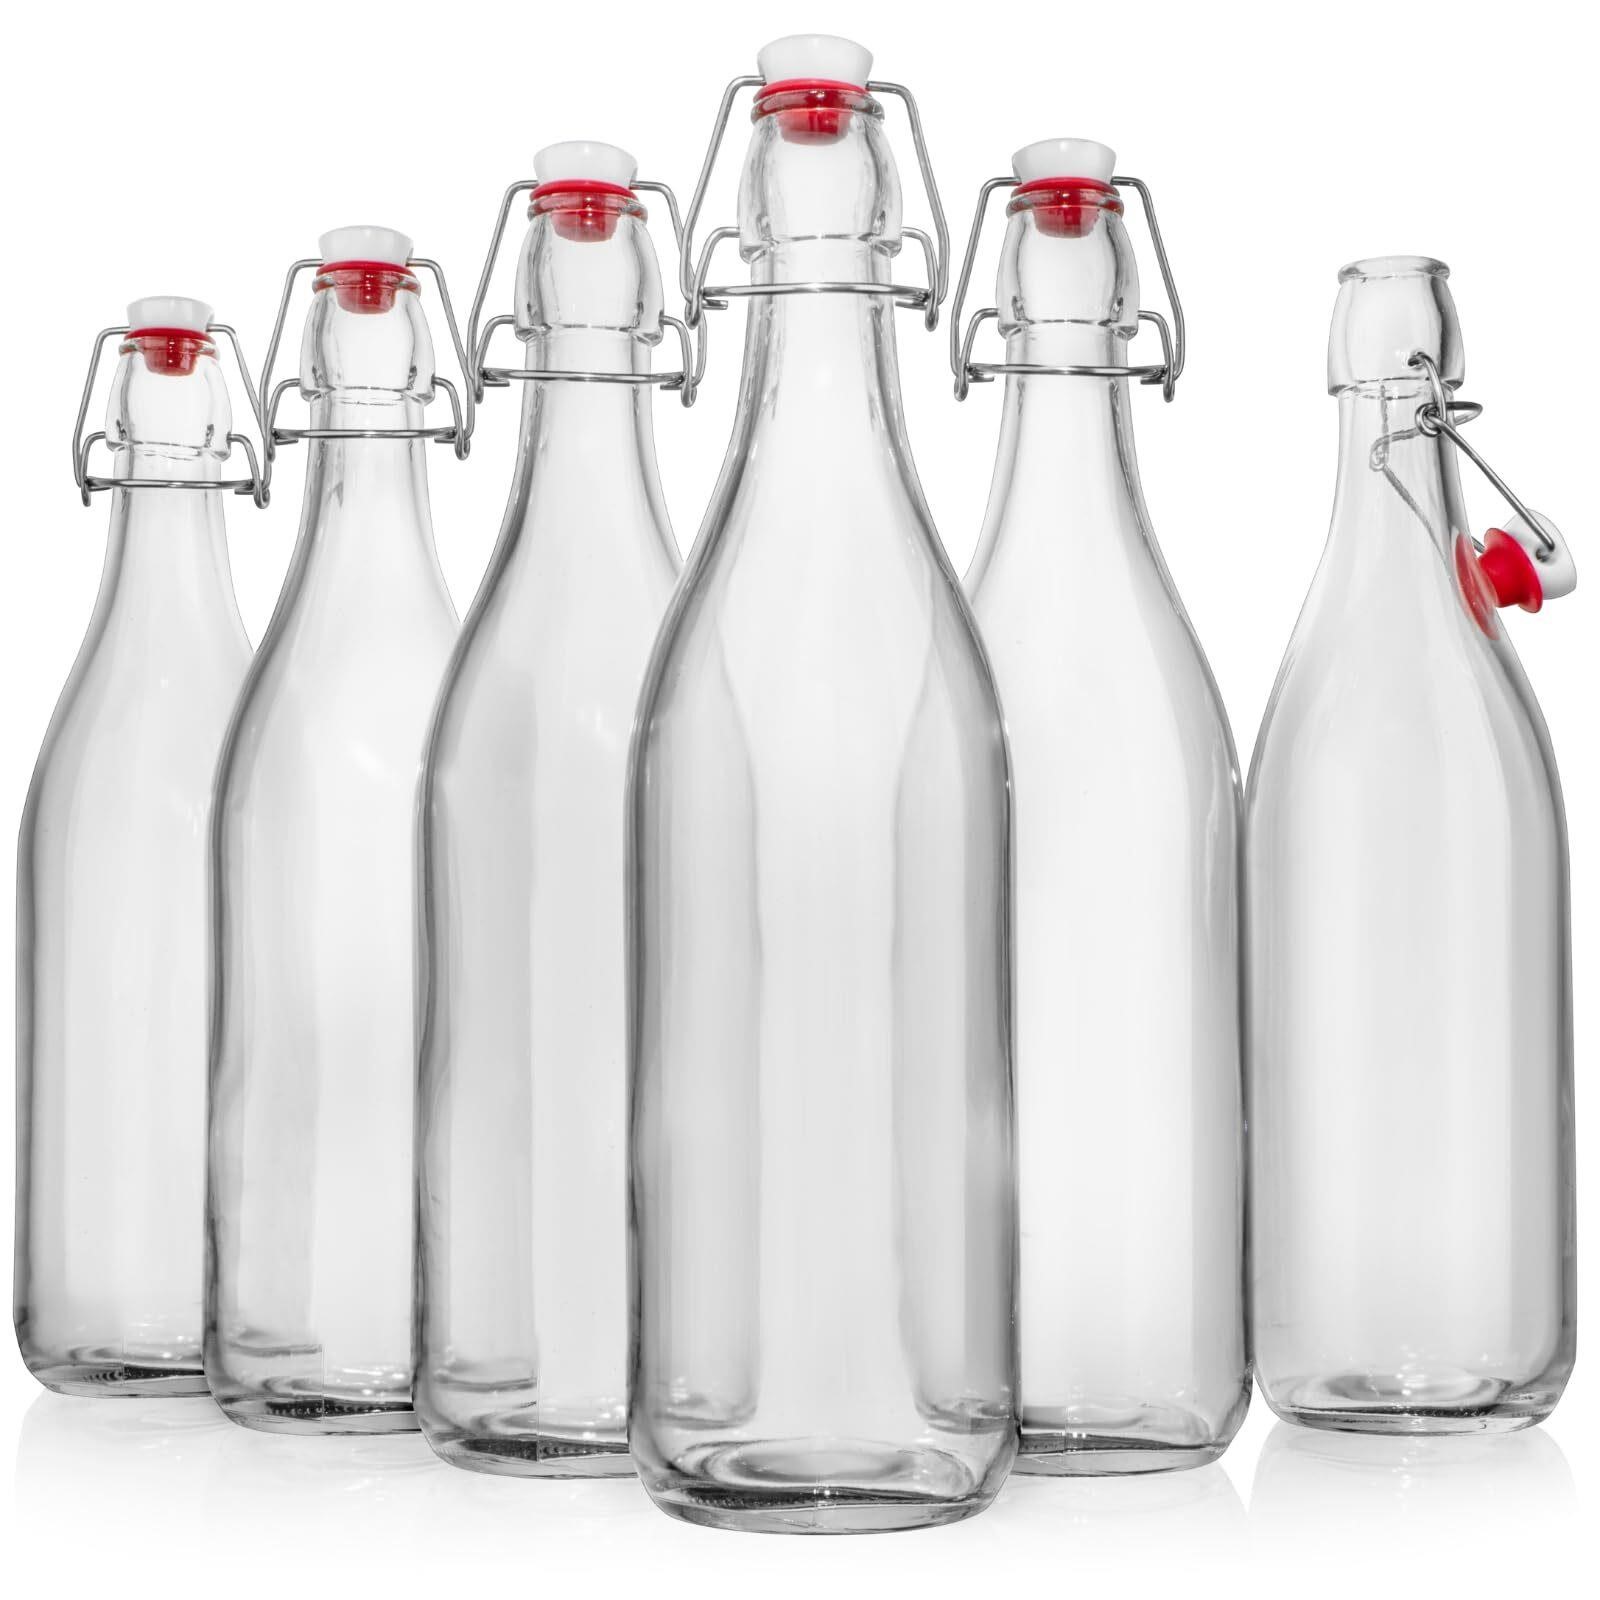 WILLDAN Giara Glass Bottle with Stopper Caps, Set